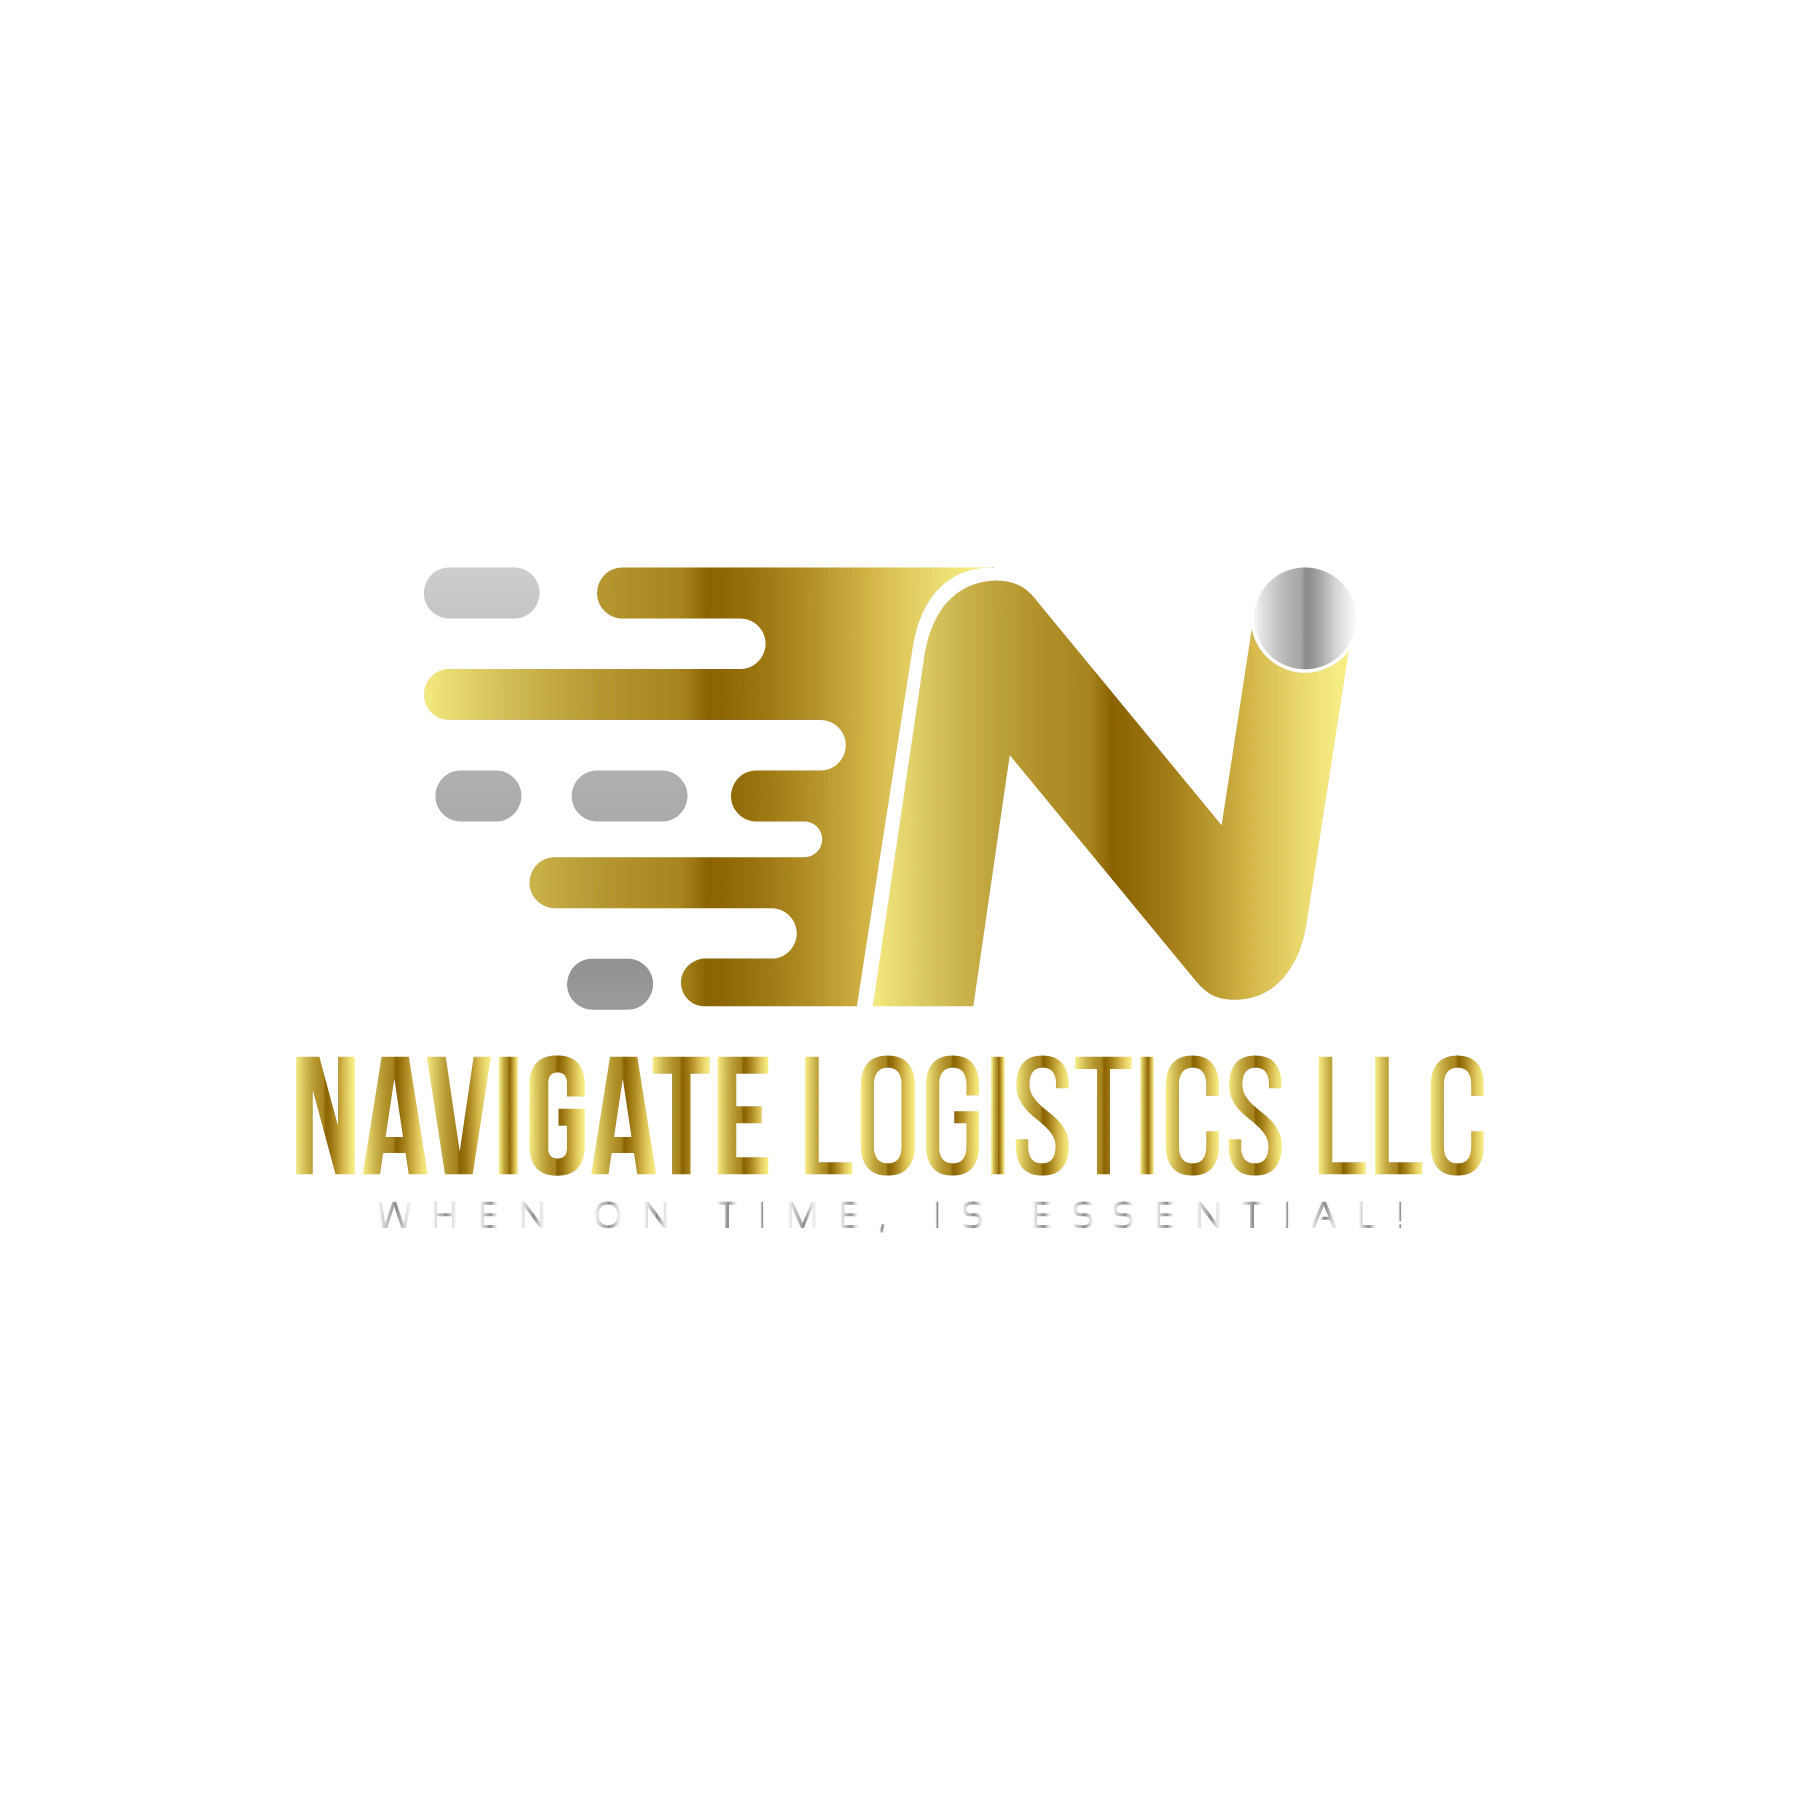 (c) Navigate-logistics.com